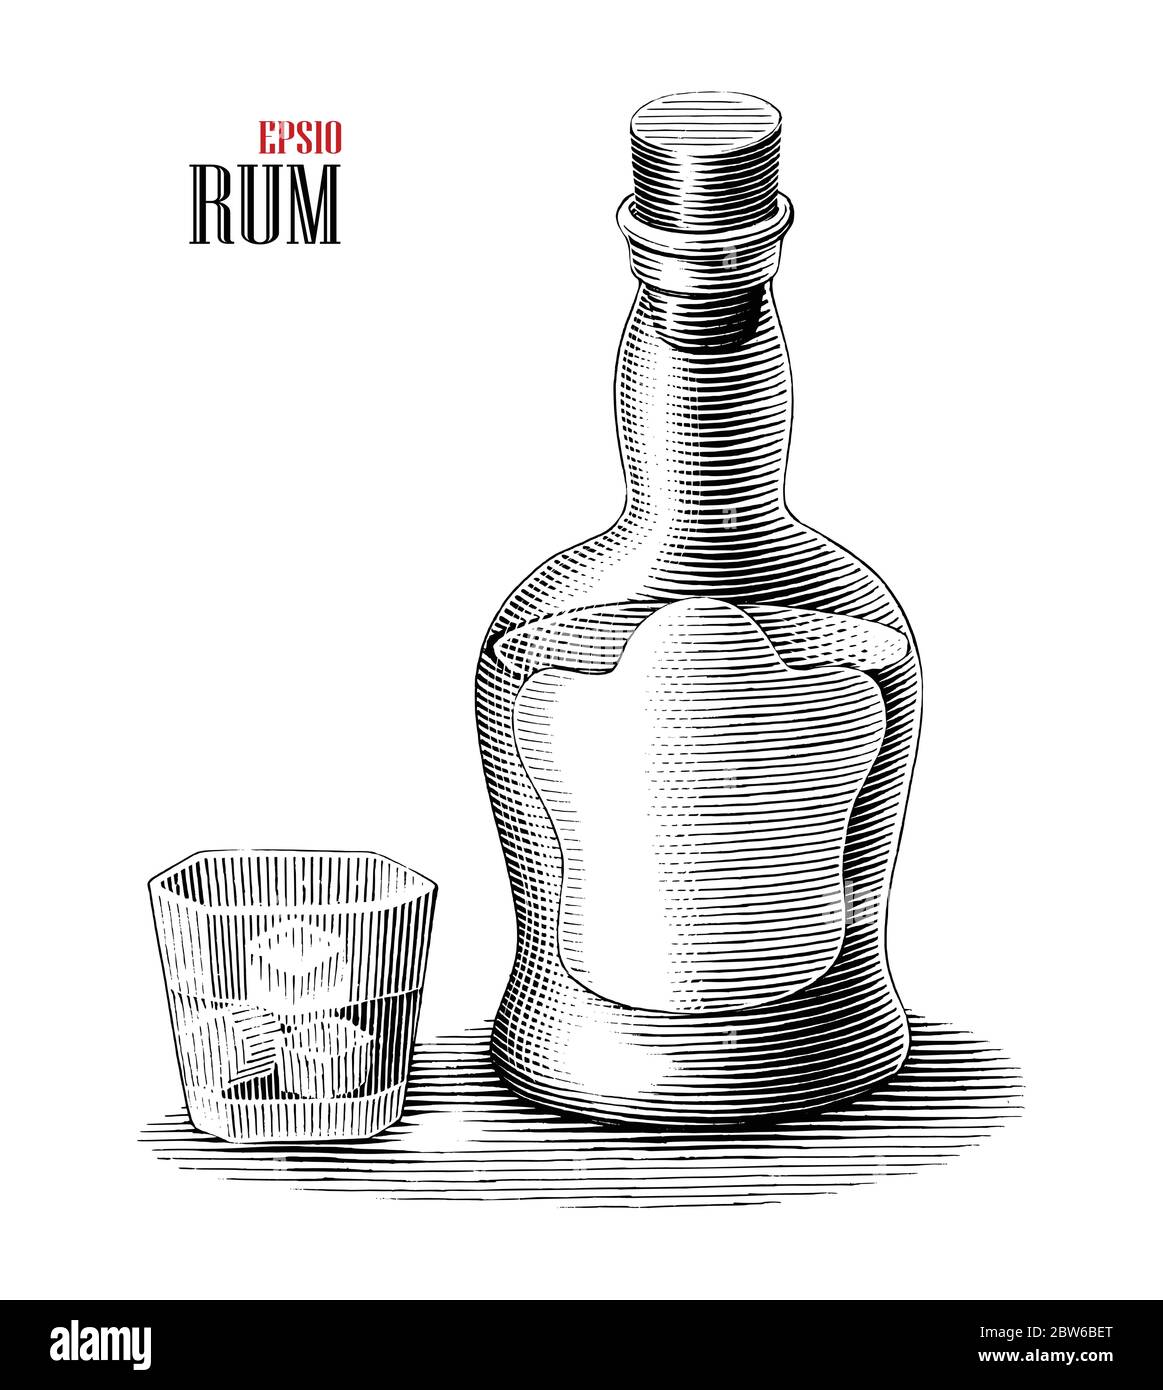 Rum Flasche mit Glas Illustration Vintage Gravur Stil schwarz und weiß  Clipart isoliert auf weißem Hintergrund Stock-Vektorgrafik - Alamy